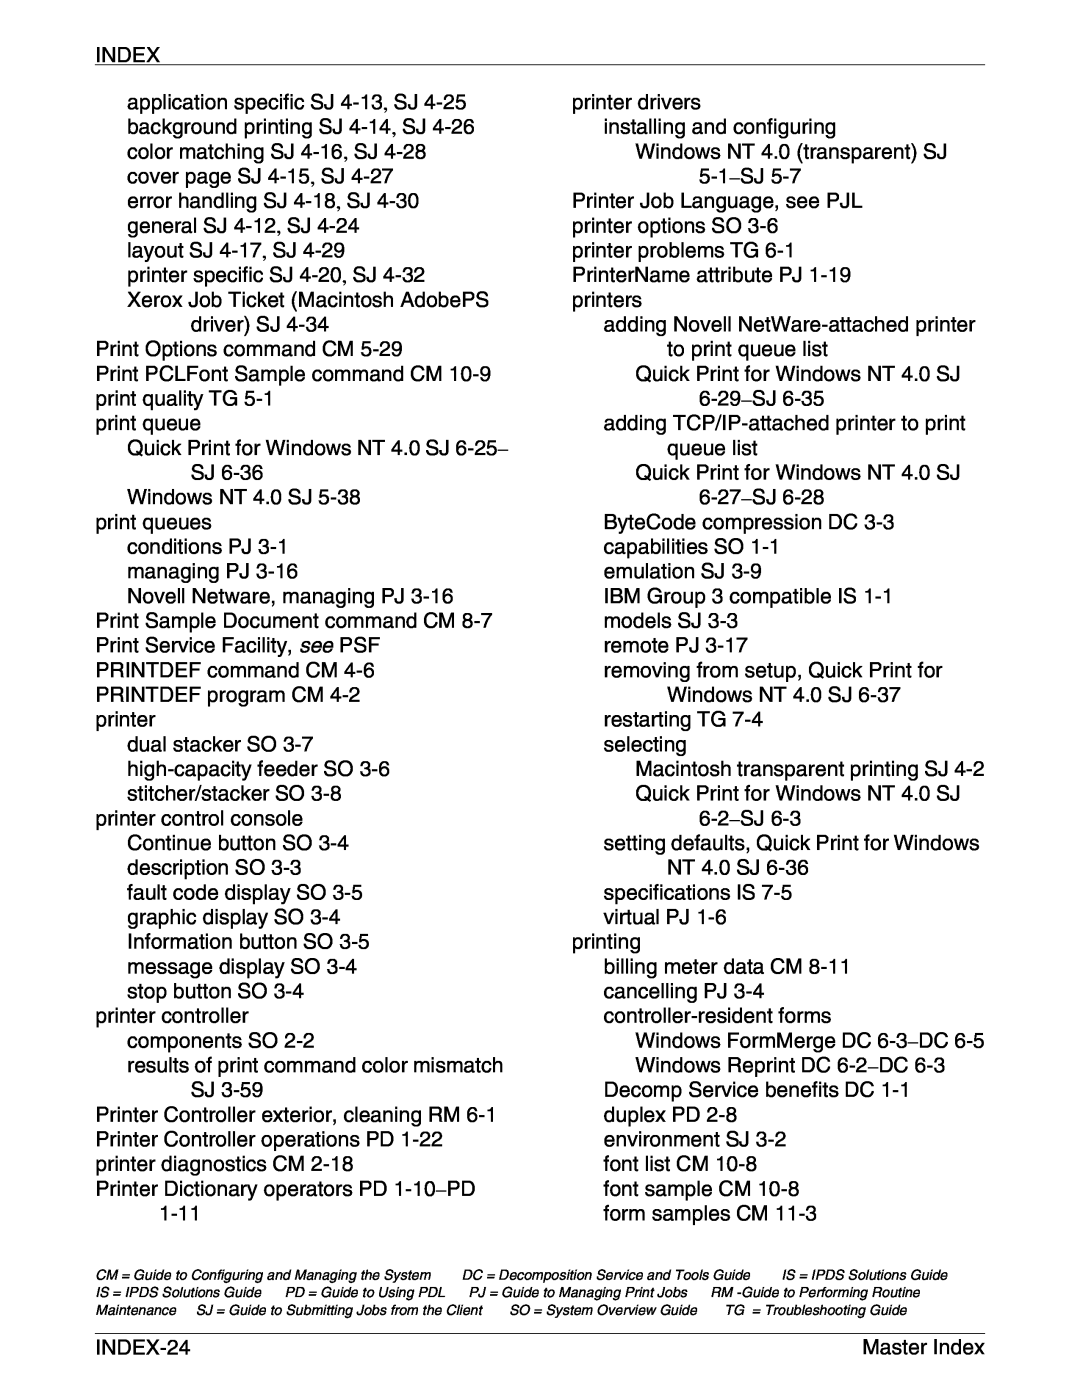 Xerox 4050/4090 NPS/NPS manual Index 